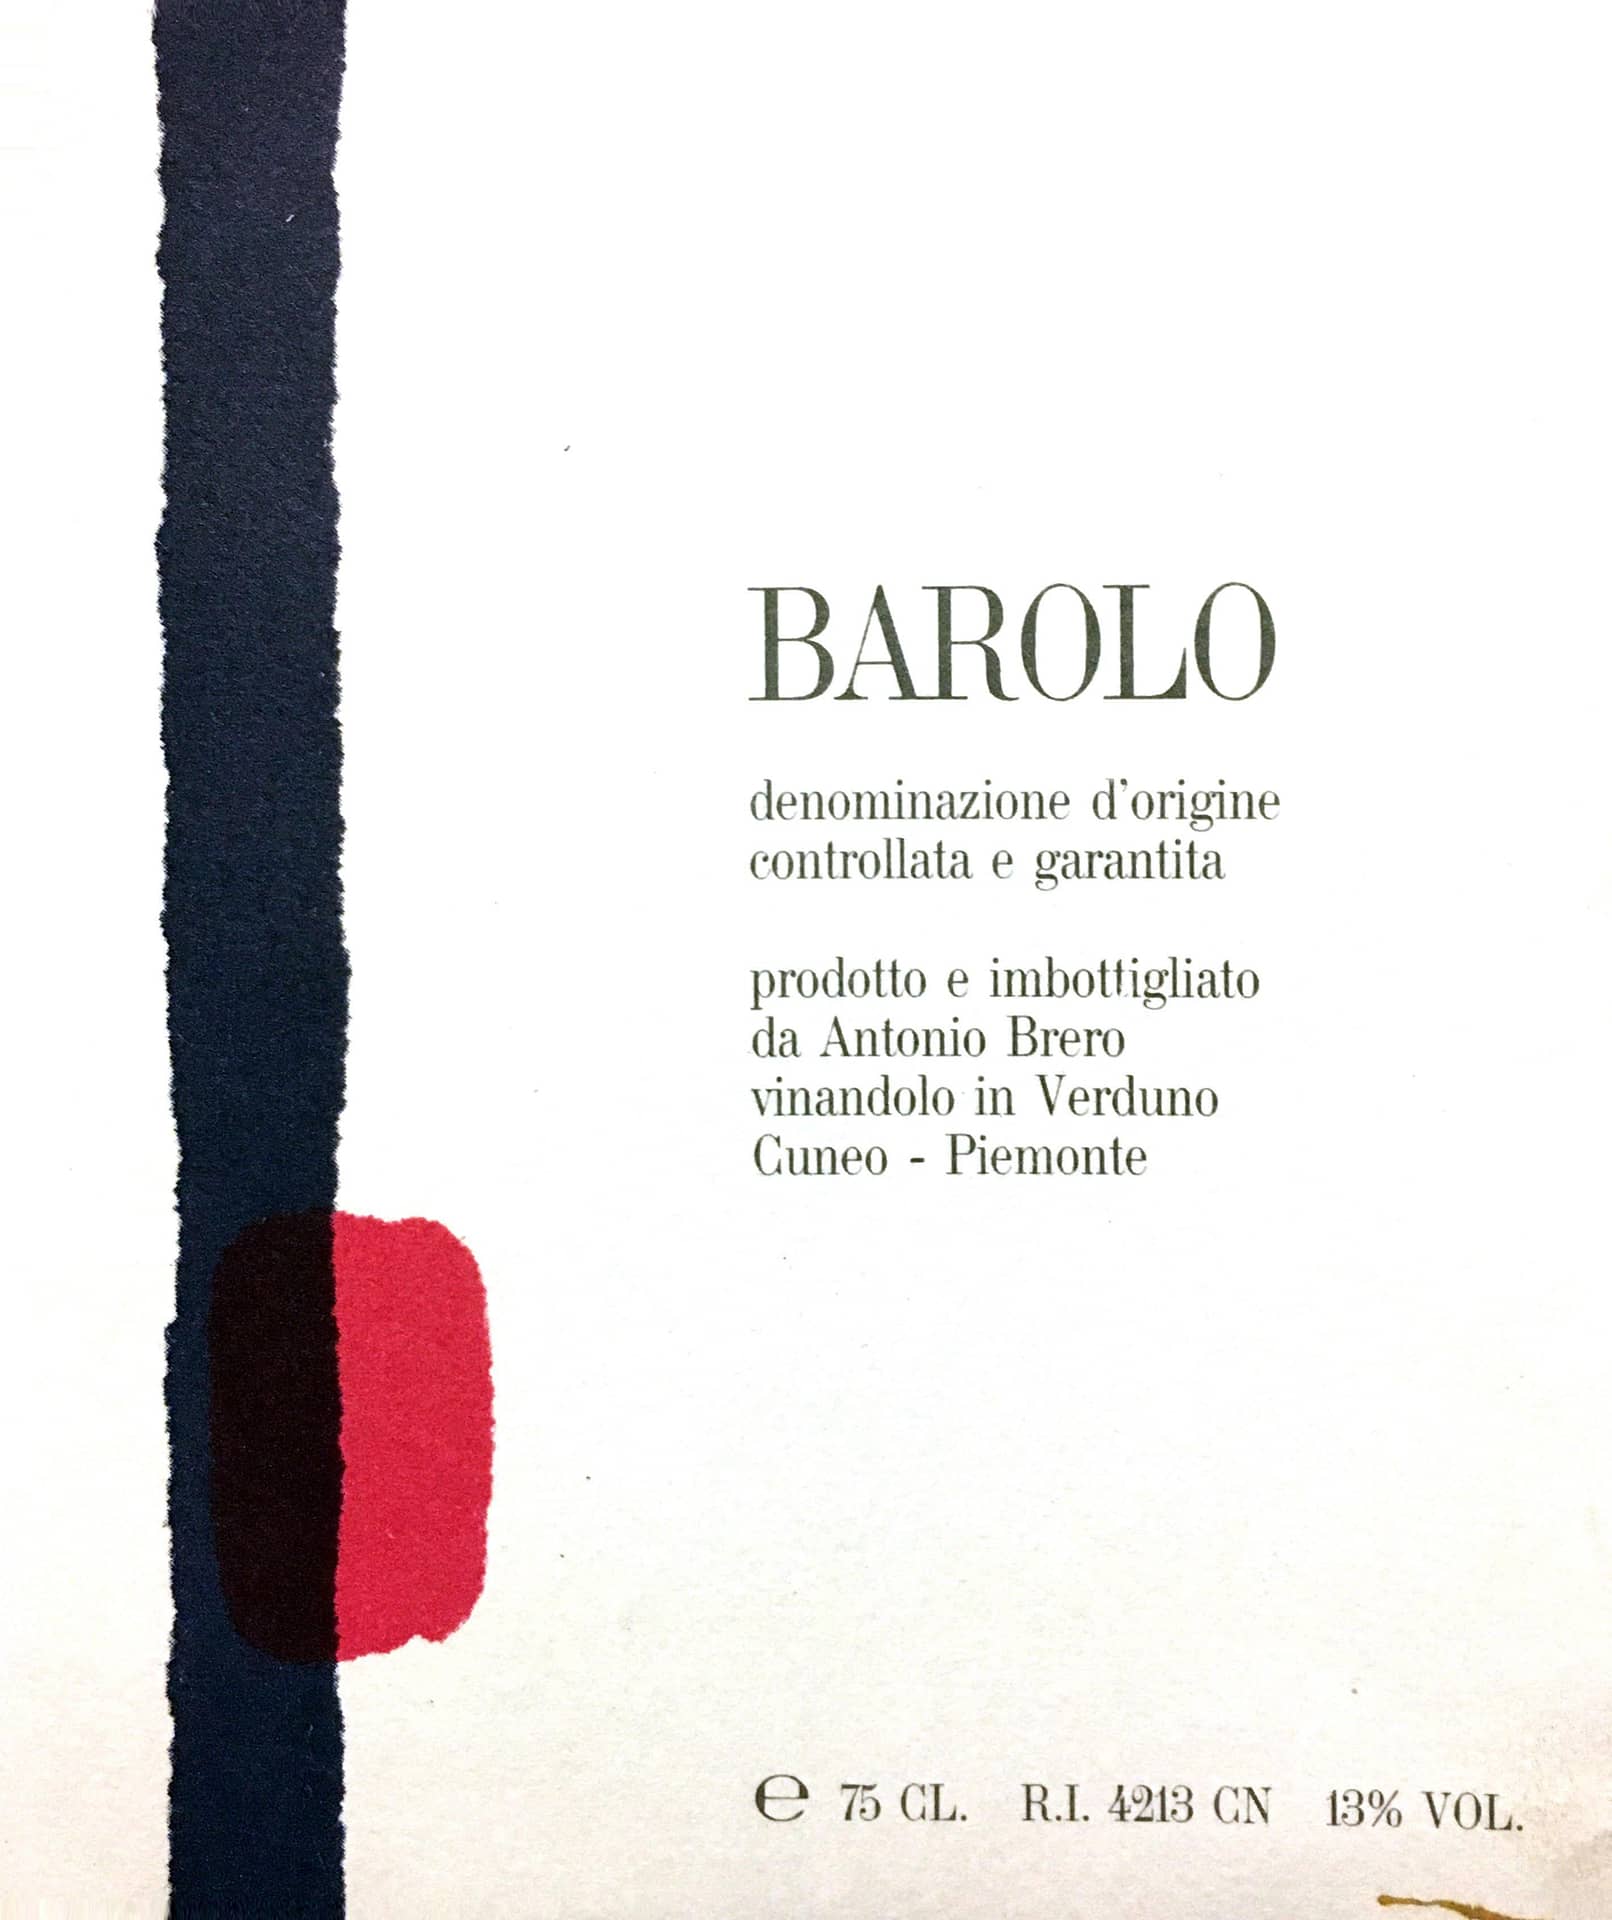 Antonio Brero Barolo 2013 - sold out